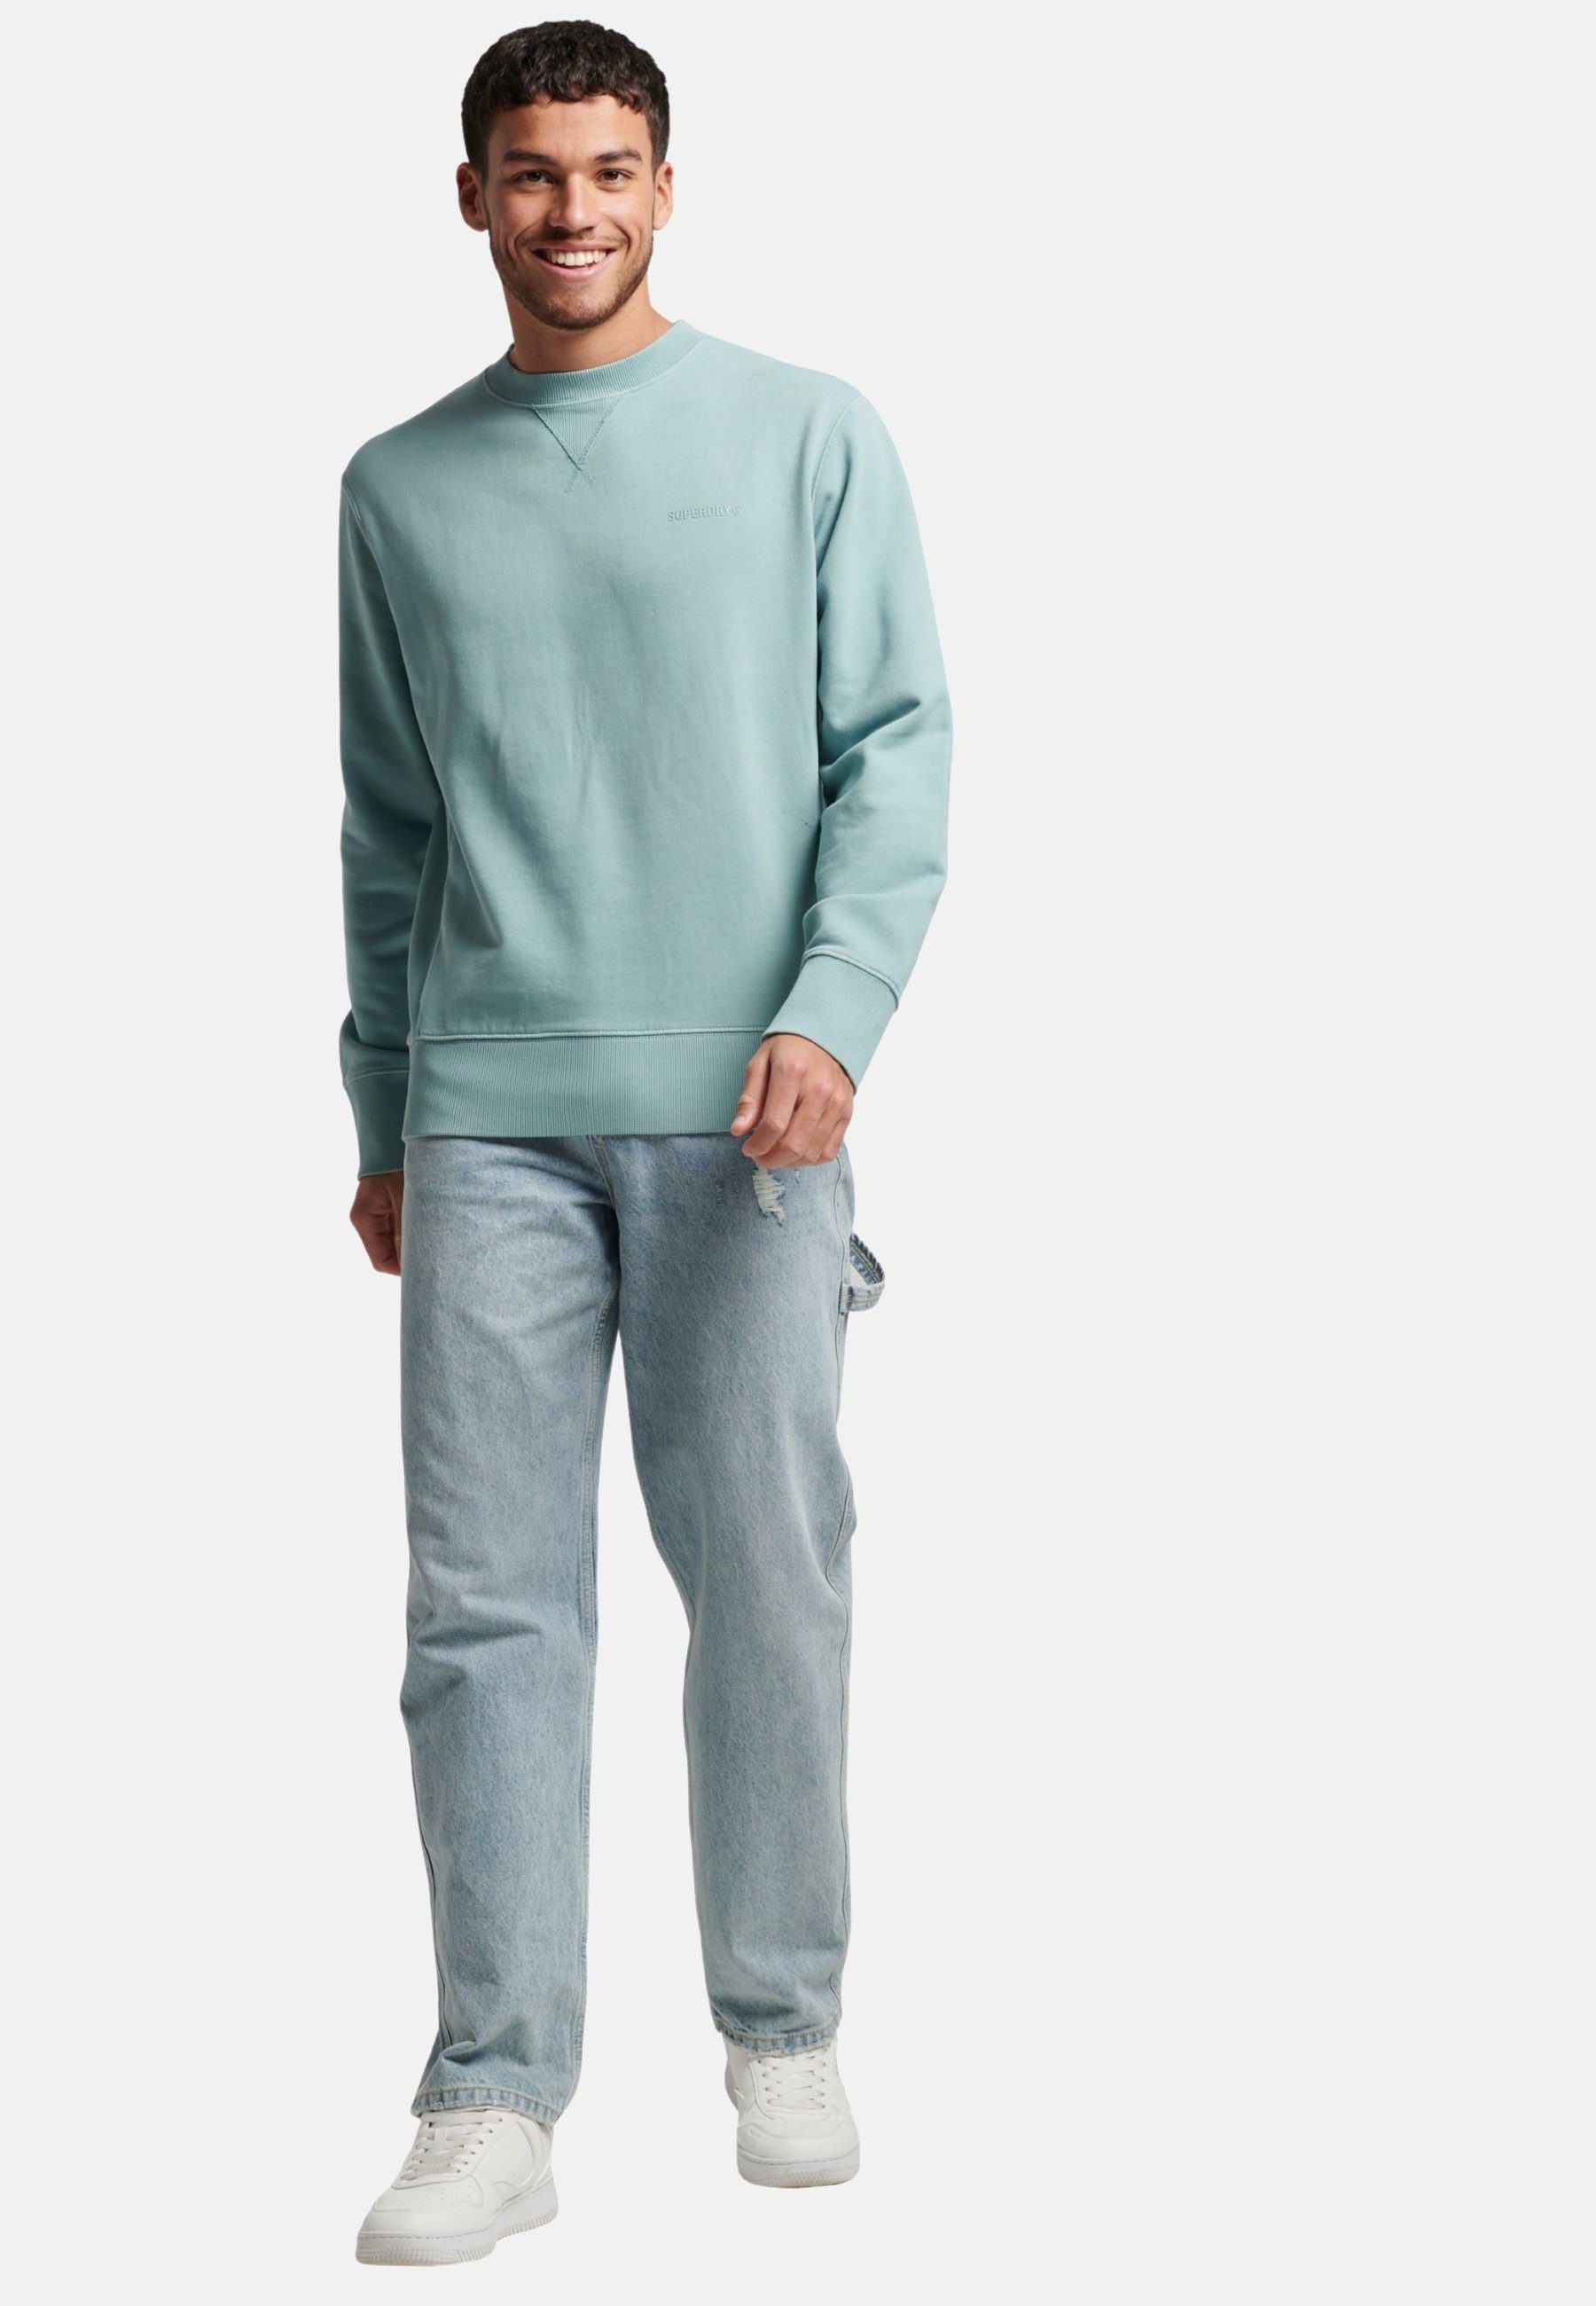 Rundhalsausschnitt mit Superdry Sweatshirt Pullover Sweatshirt hellblau